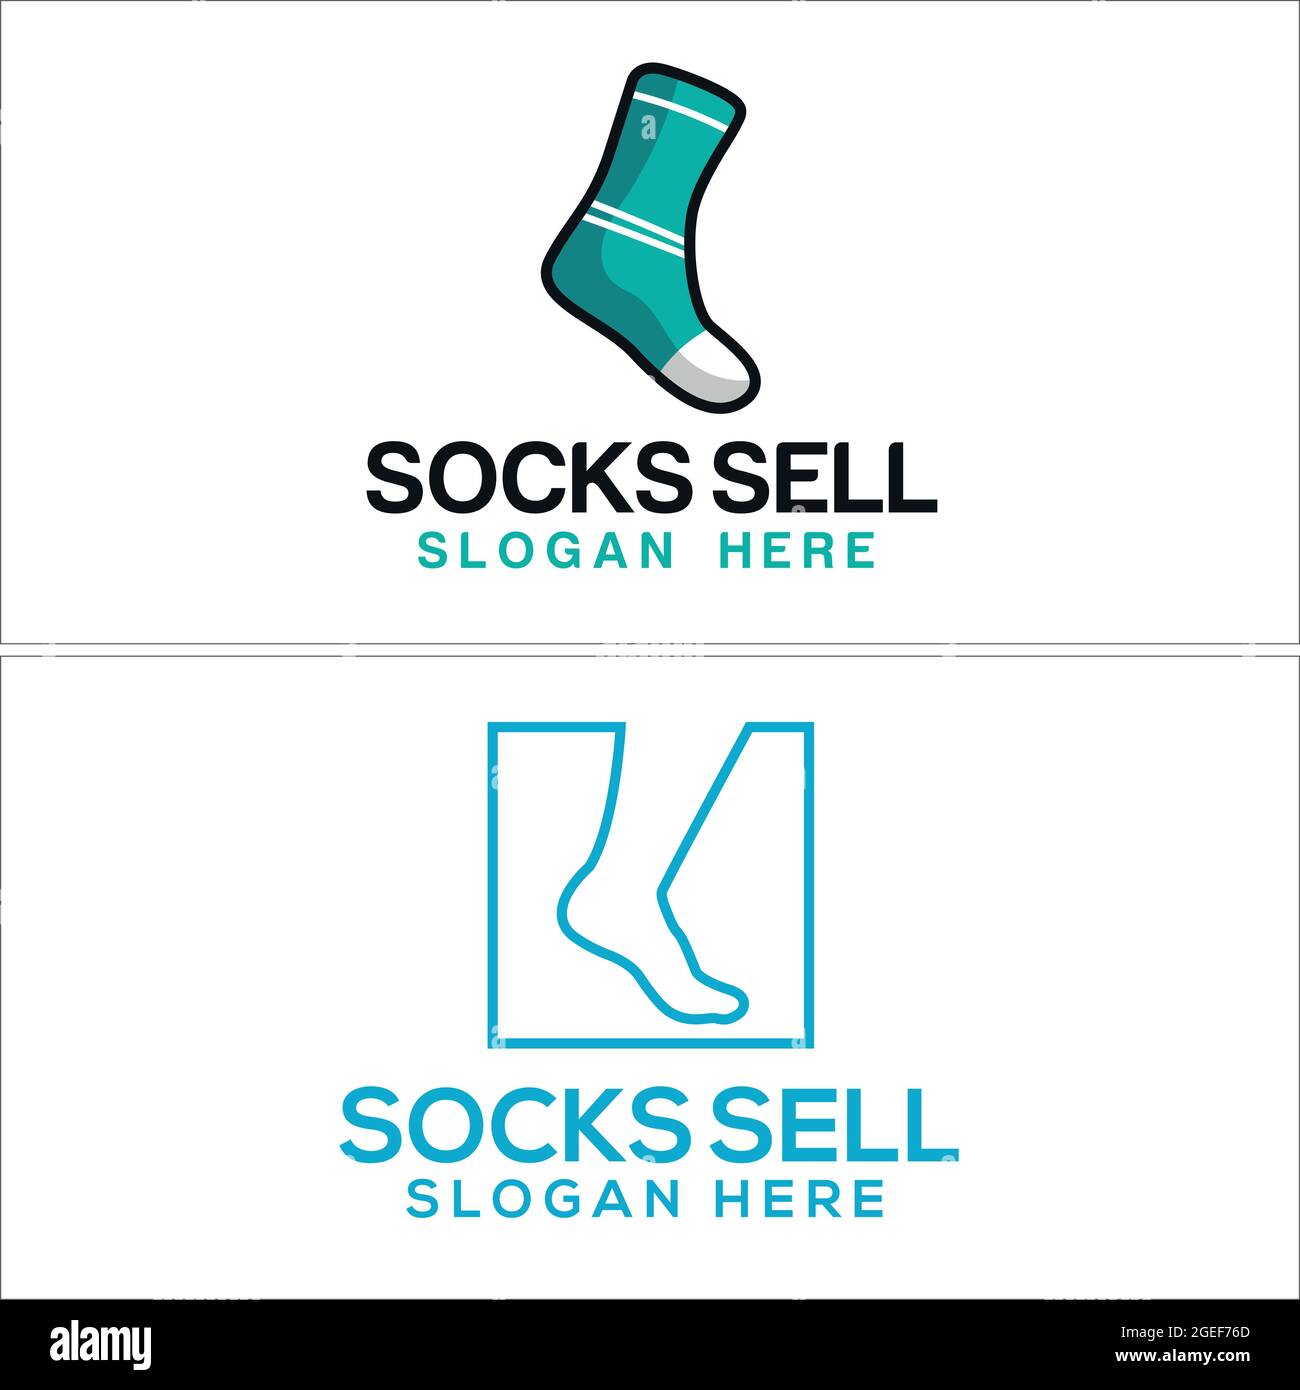 Share more than 142 socks logo best - camera.edu.vn